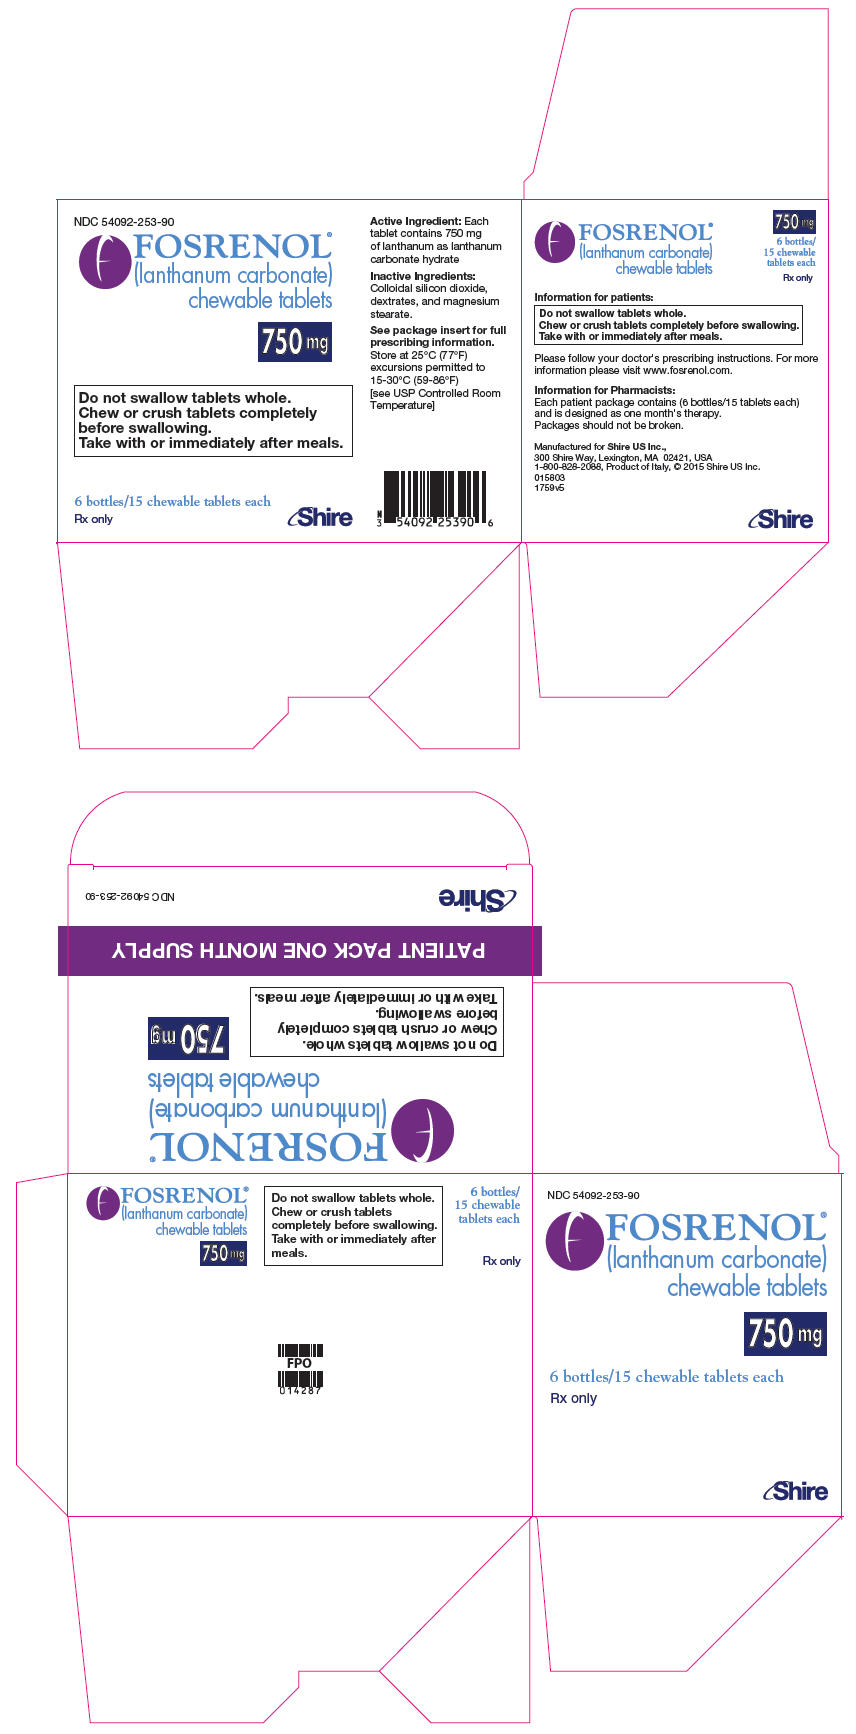 PRINCIPAL DISPLAY PANEL - 750 mg Tablet Bottle Carton